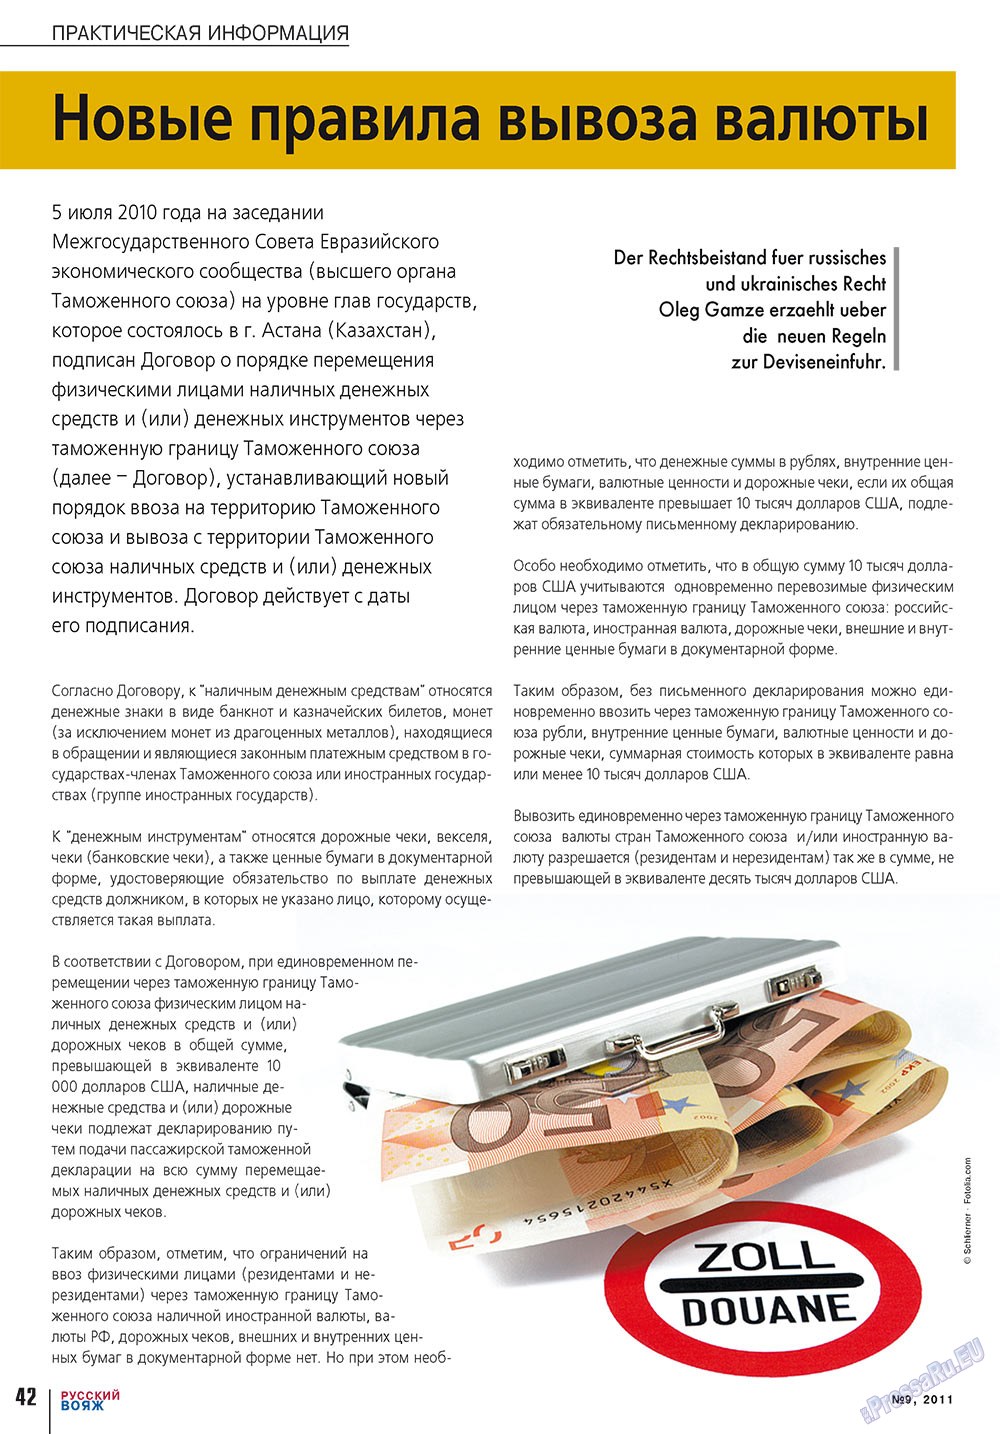 Русский вояж, журнал. 2011 №9 стр.42